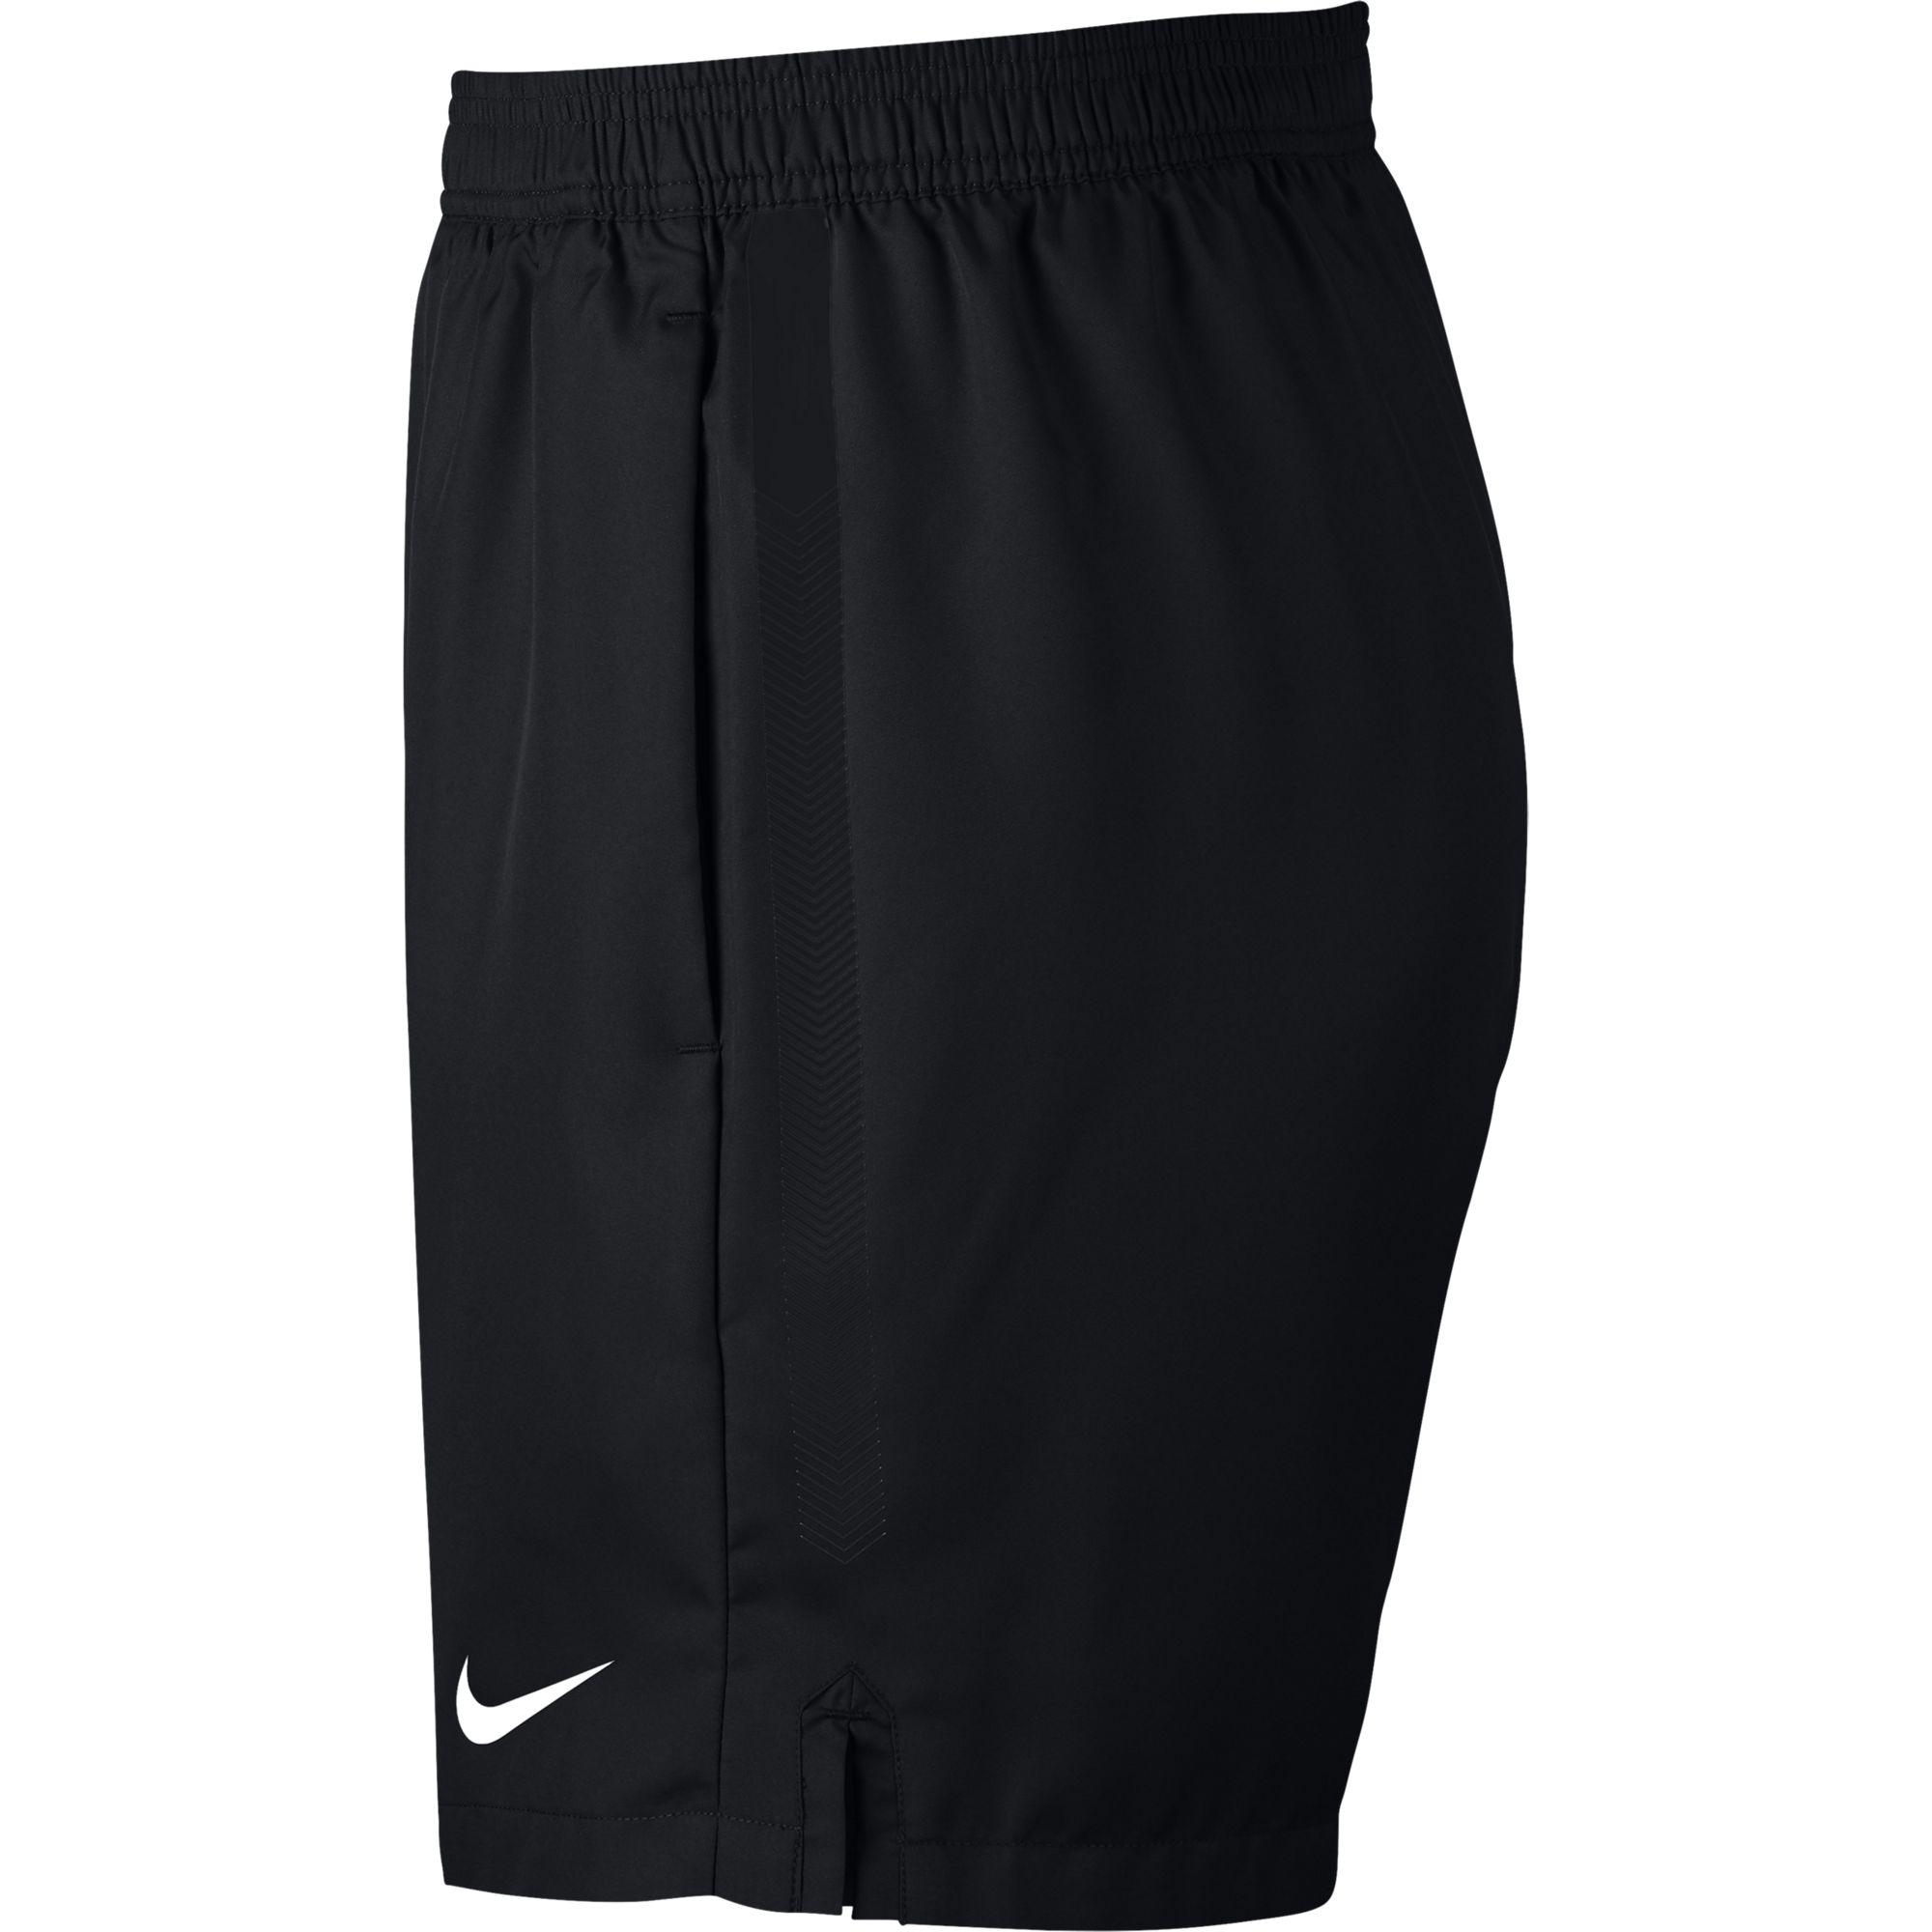 Nike Mens Dry 7 Inch Tennis Shorts - Black/White - Tennisnuts.com